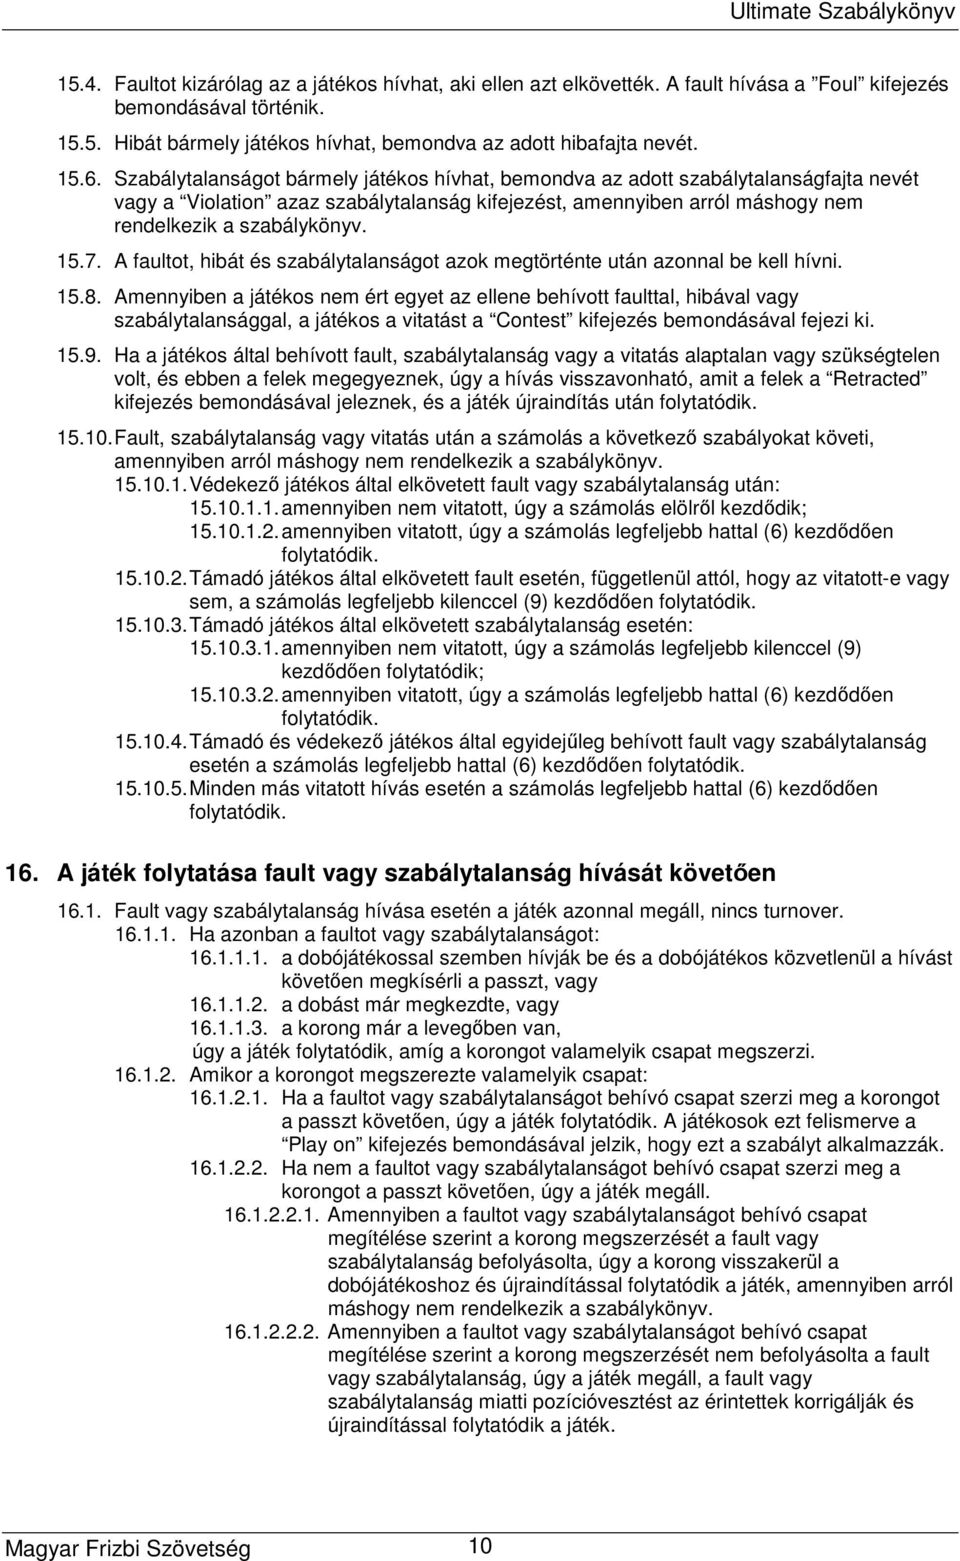 Magyar Frizbi Szövetség. Ultimate Szabálykönyv - PDF Free Download